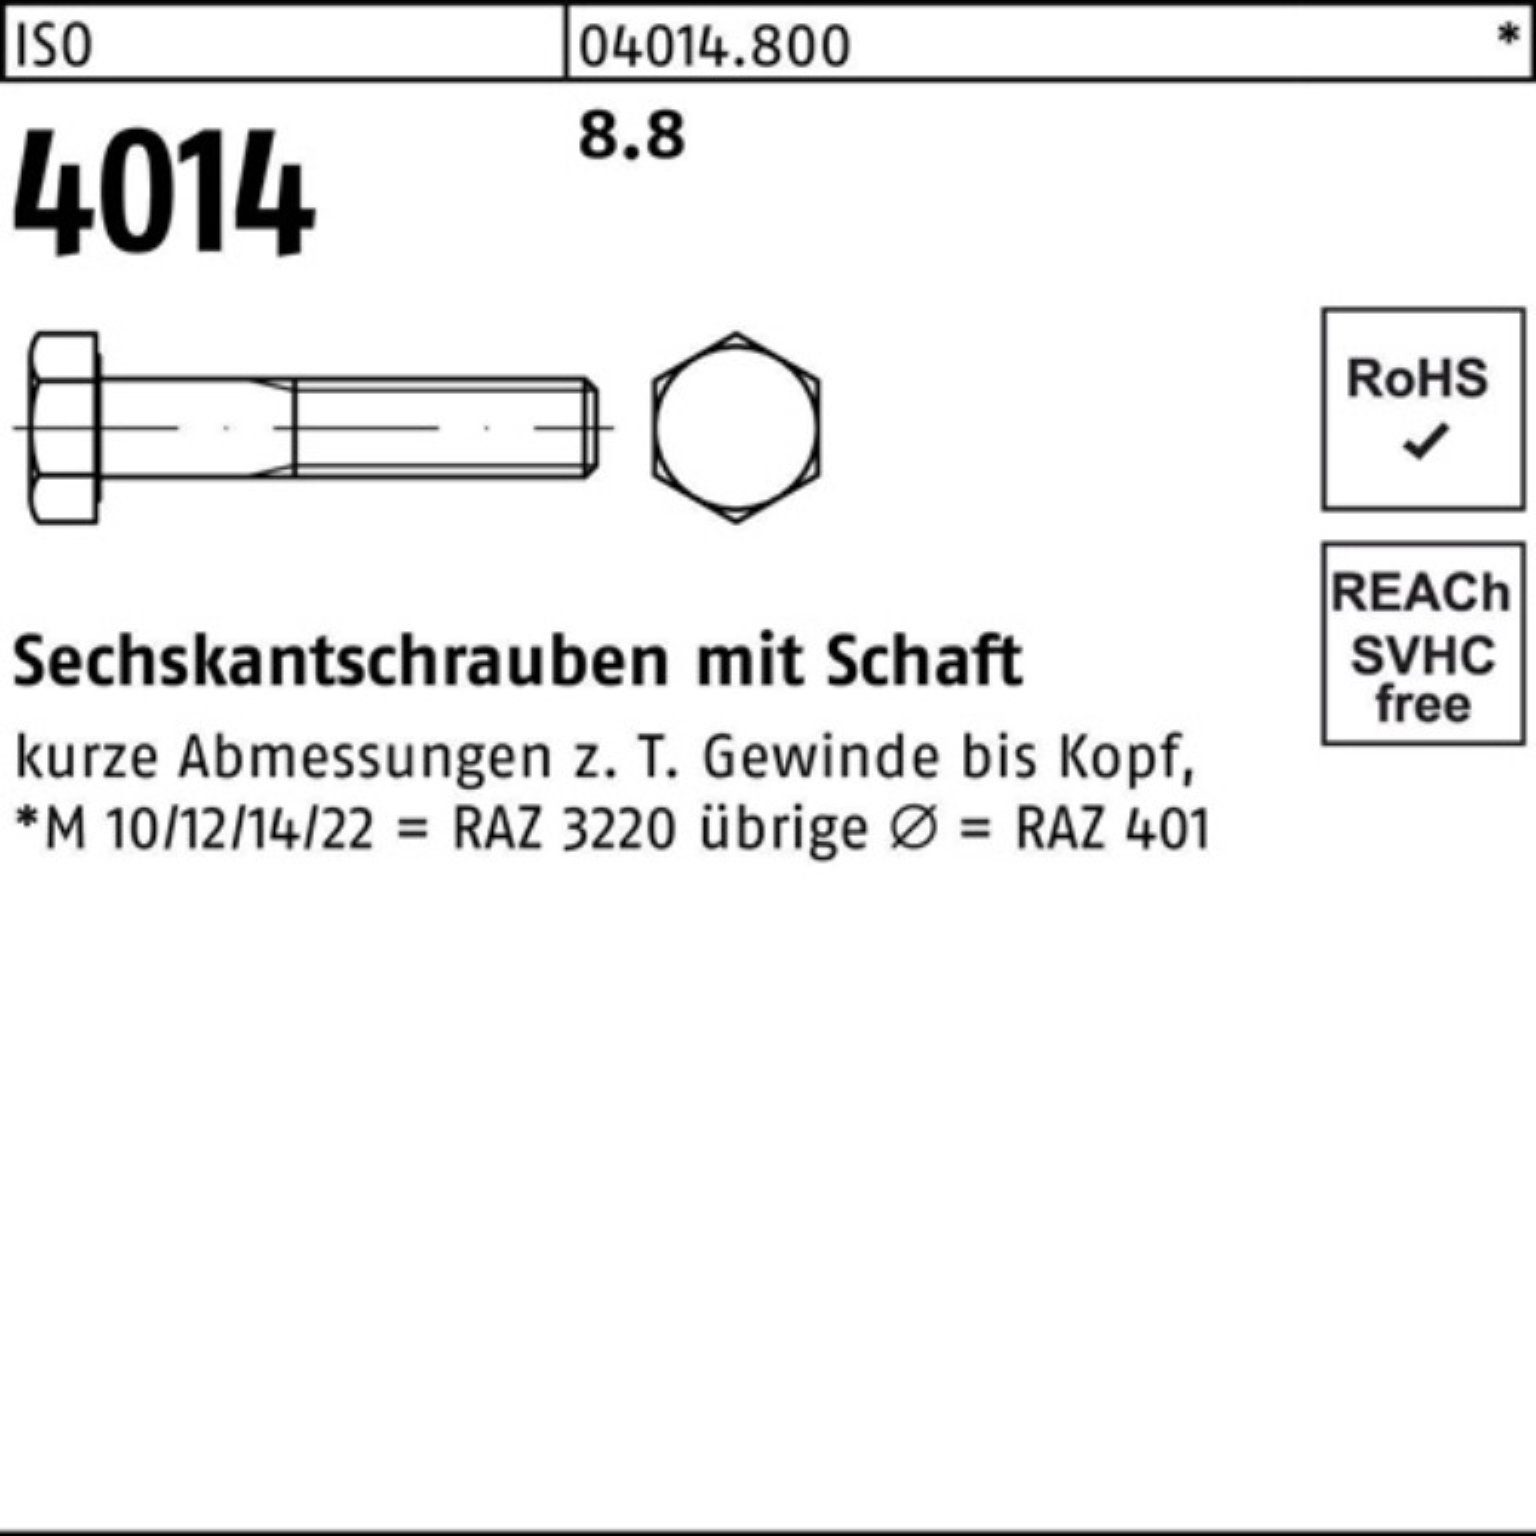 1 ISO ISO Sechskantschraube Sechskantschraube 8.8 180 Schaft 4014 Pack Bufab 100er Stück M24x